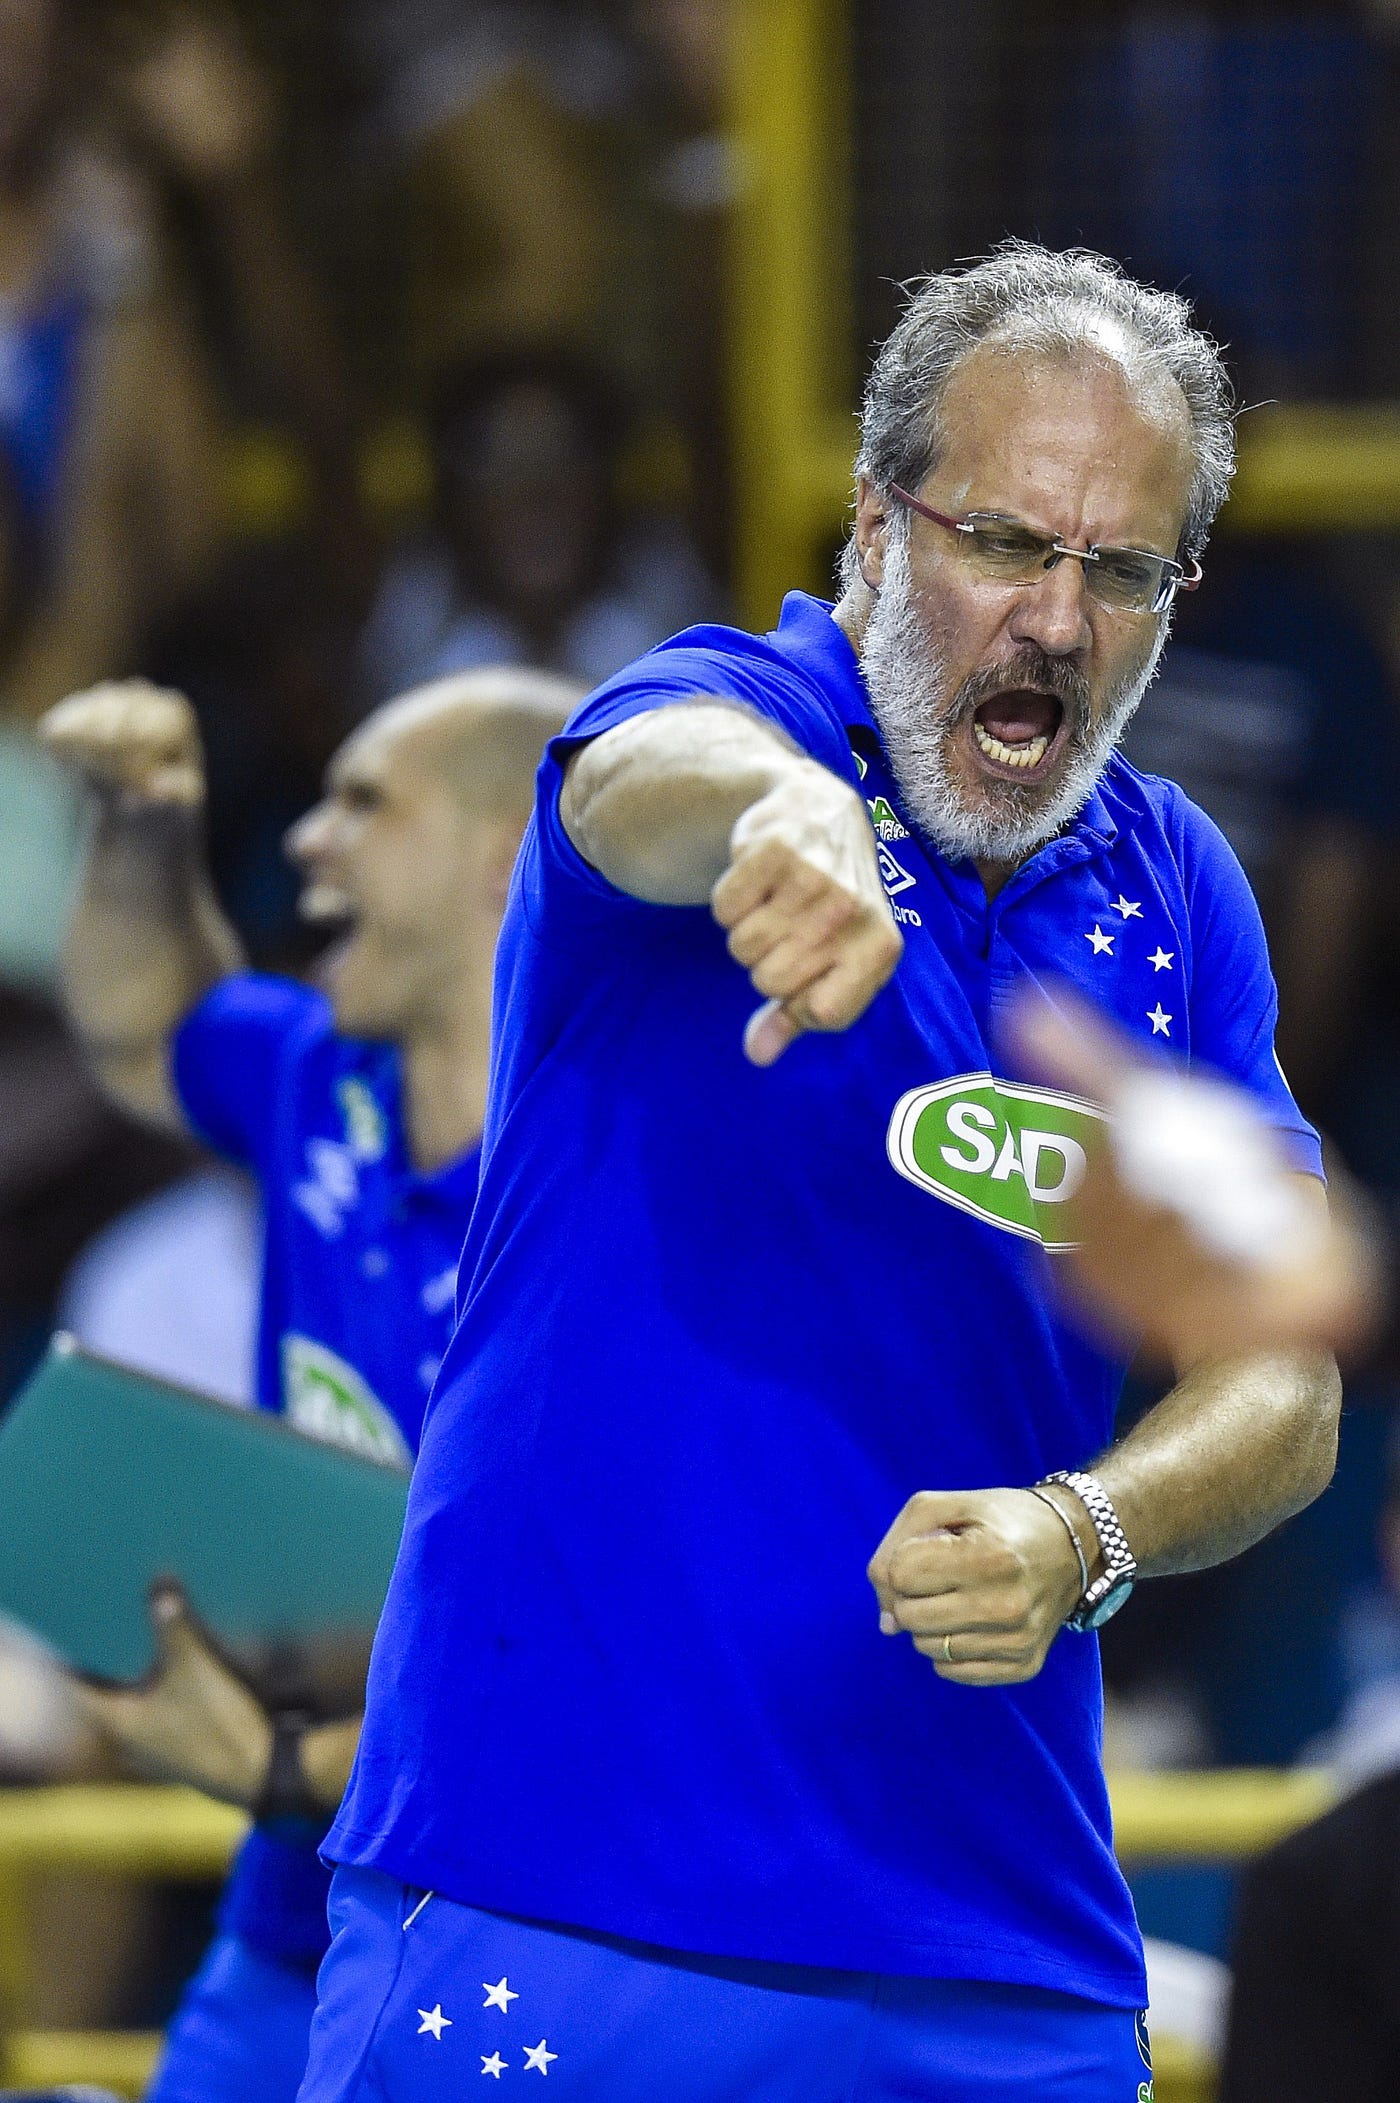 Conheça o Sada Cruzeiro: terceiro título mundial no vôlei masculino, by  Isabella Moreira